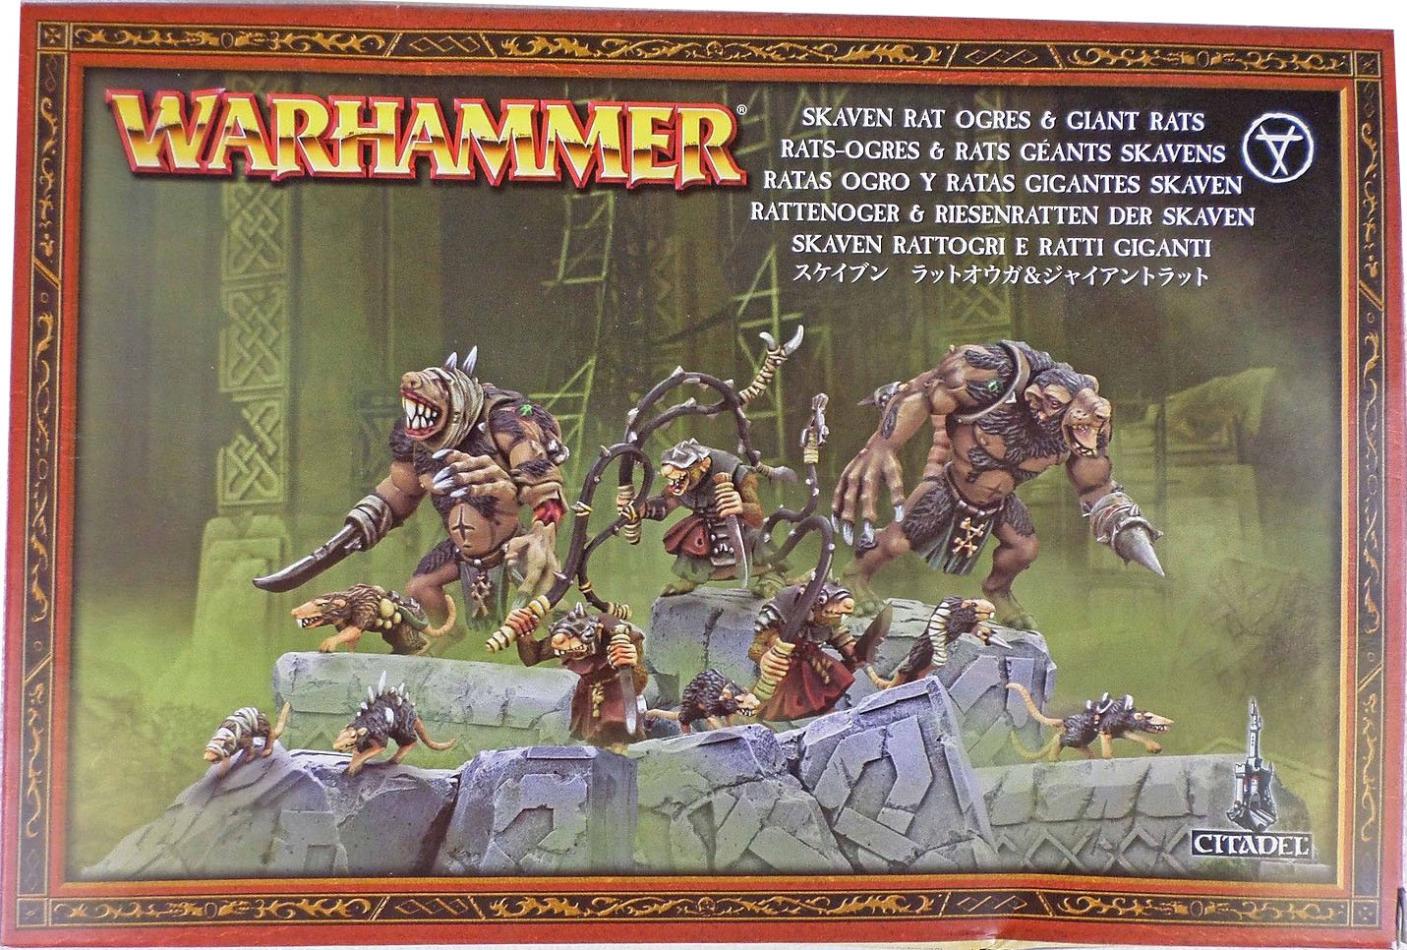 Giant Bits Skaven Rat Ogres Giant Rats Warhammer Age of Sigmar AoS Battle Bitz 